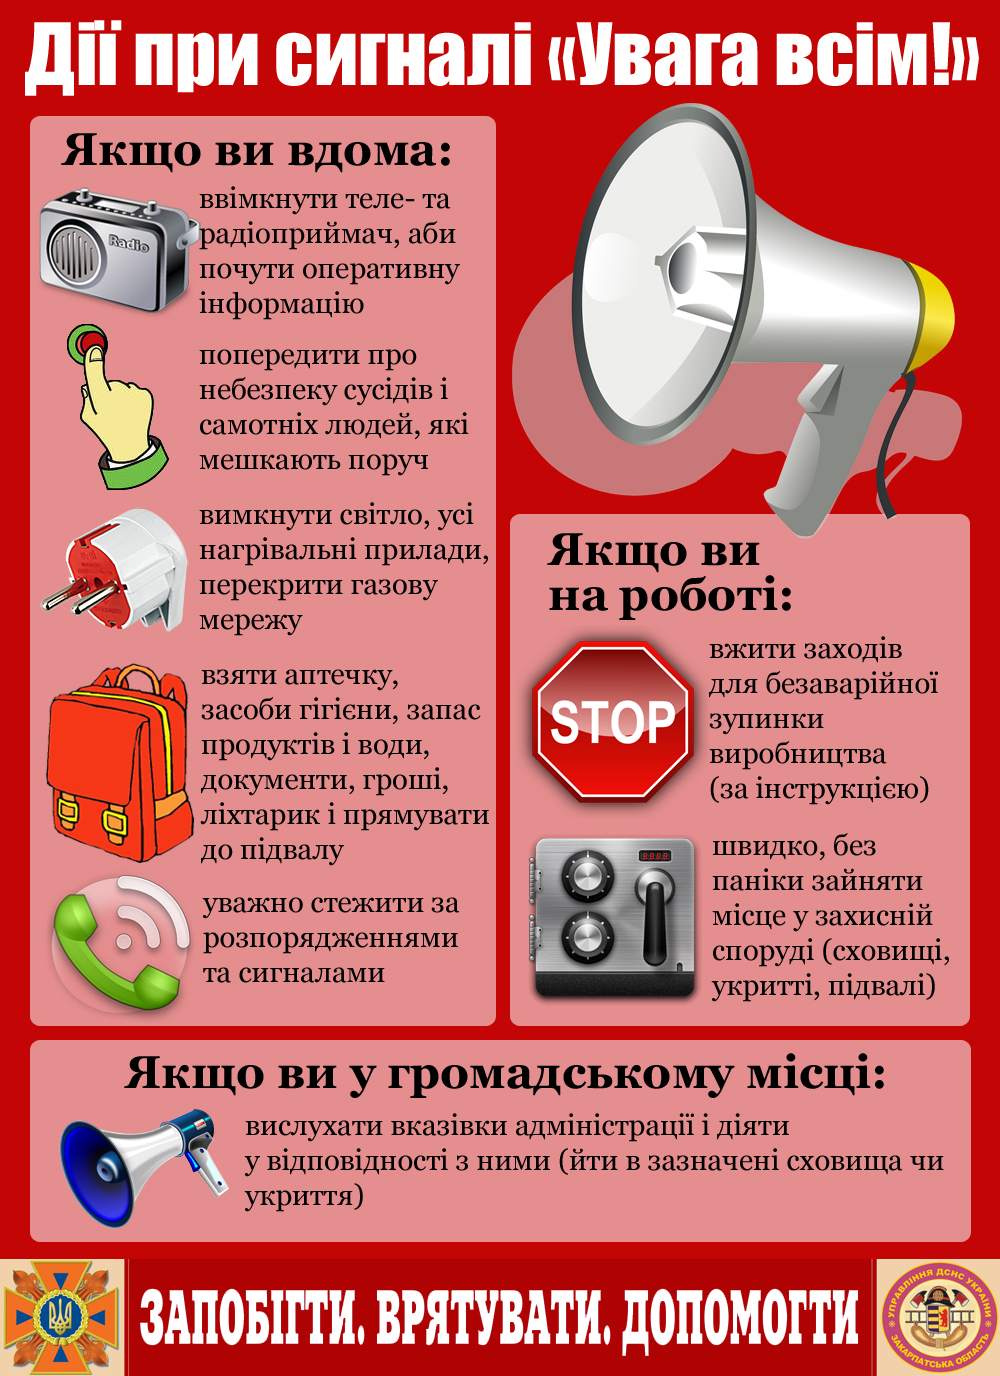 Управління ДСНС України у Закарпатській області інформує про правила поведінки під час сигналу "Увага всім!"